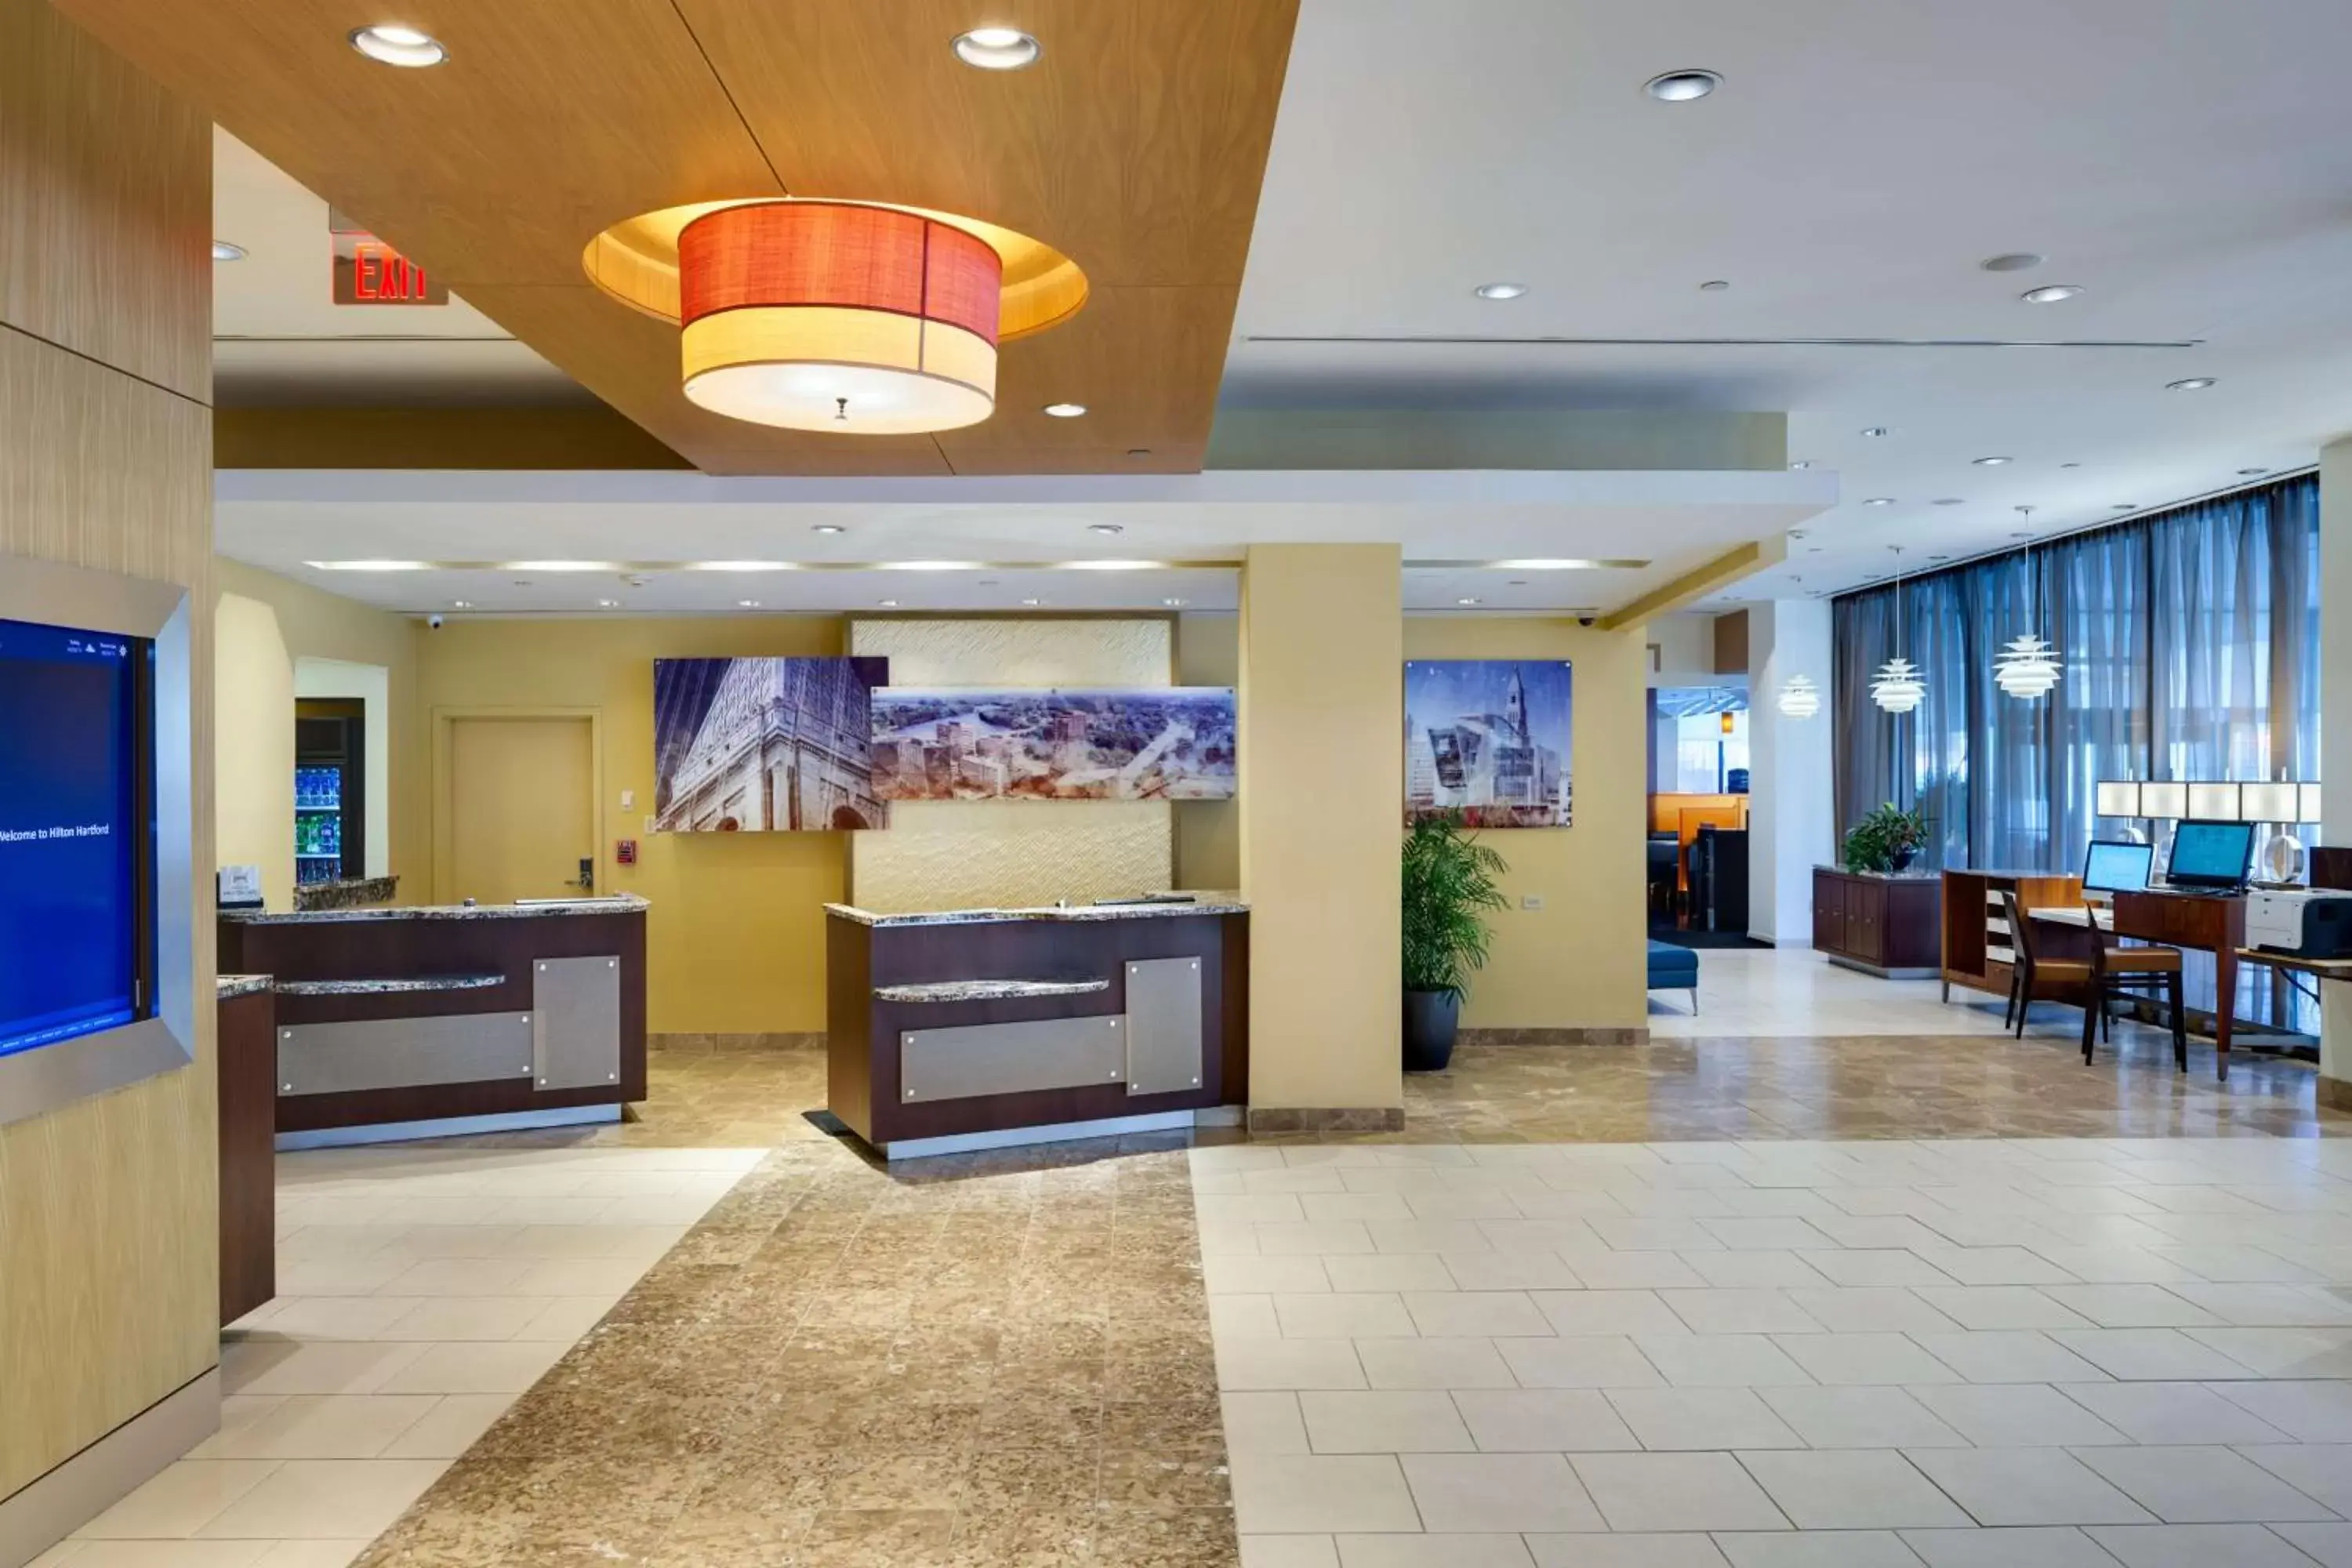 Lobby or reception, Lobby/Reception in Hilton Hartford